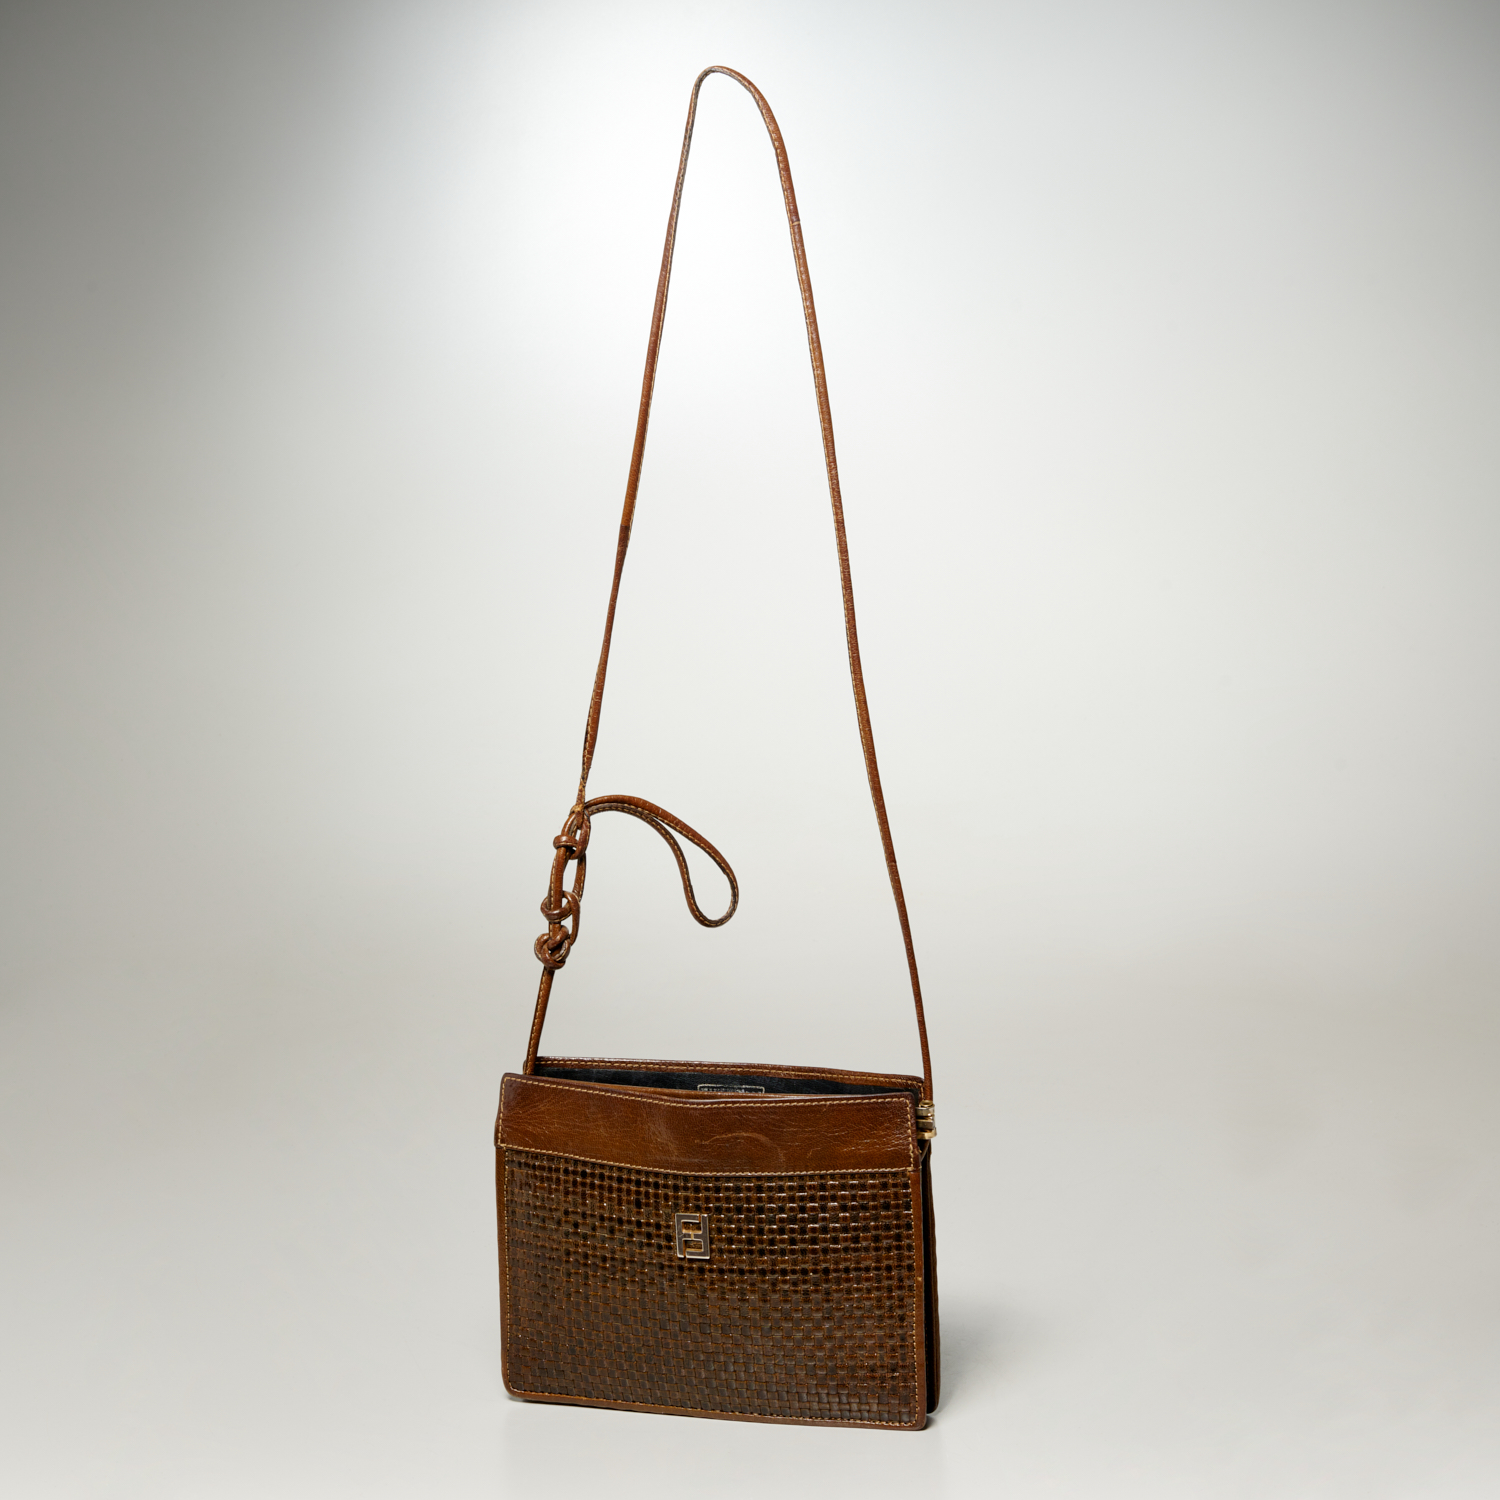 Sold at Auction: Vintage Fendi monogram shoulder bag